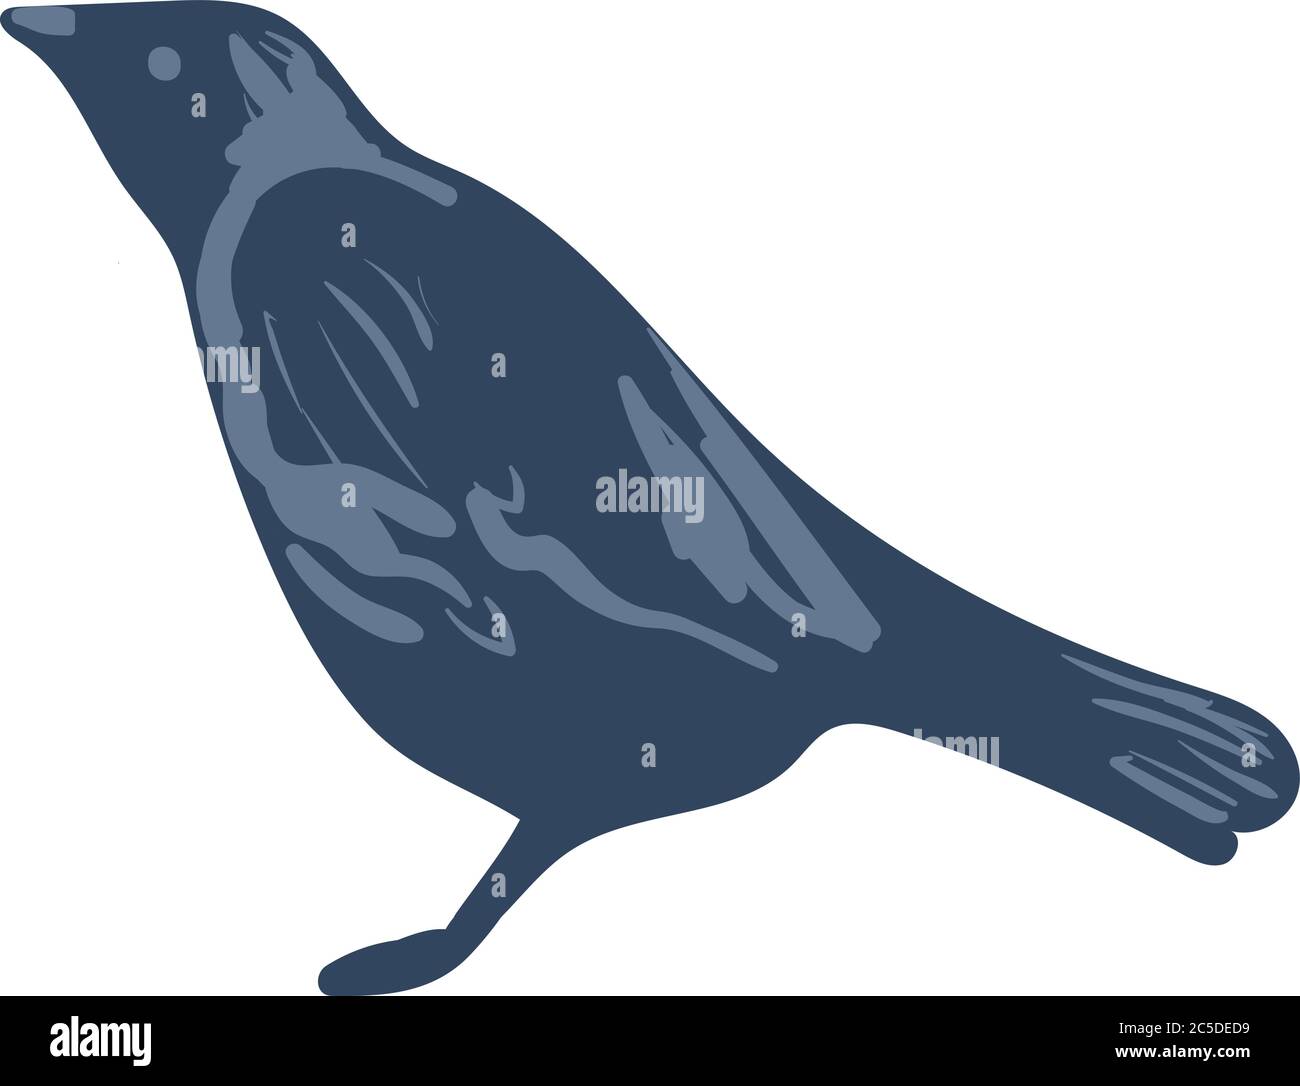 Dohlenvogel einfache Vektor-Illustration Stock Vektor